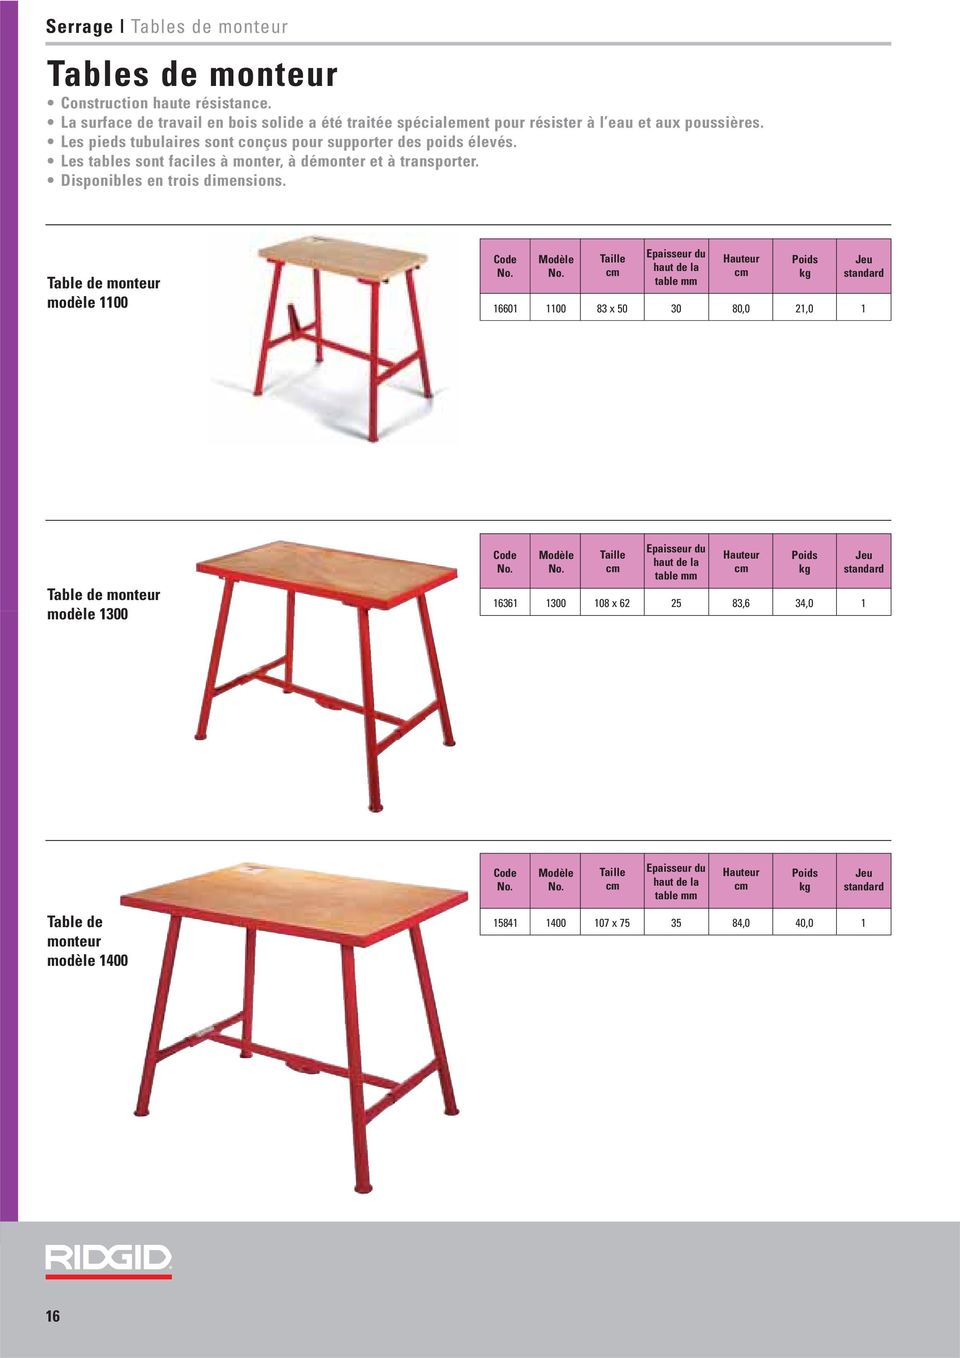 Les tables sont faciles à monter, à démonter et à transporter. Disponibles en trois dimensions.